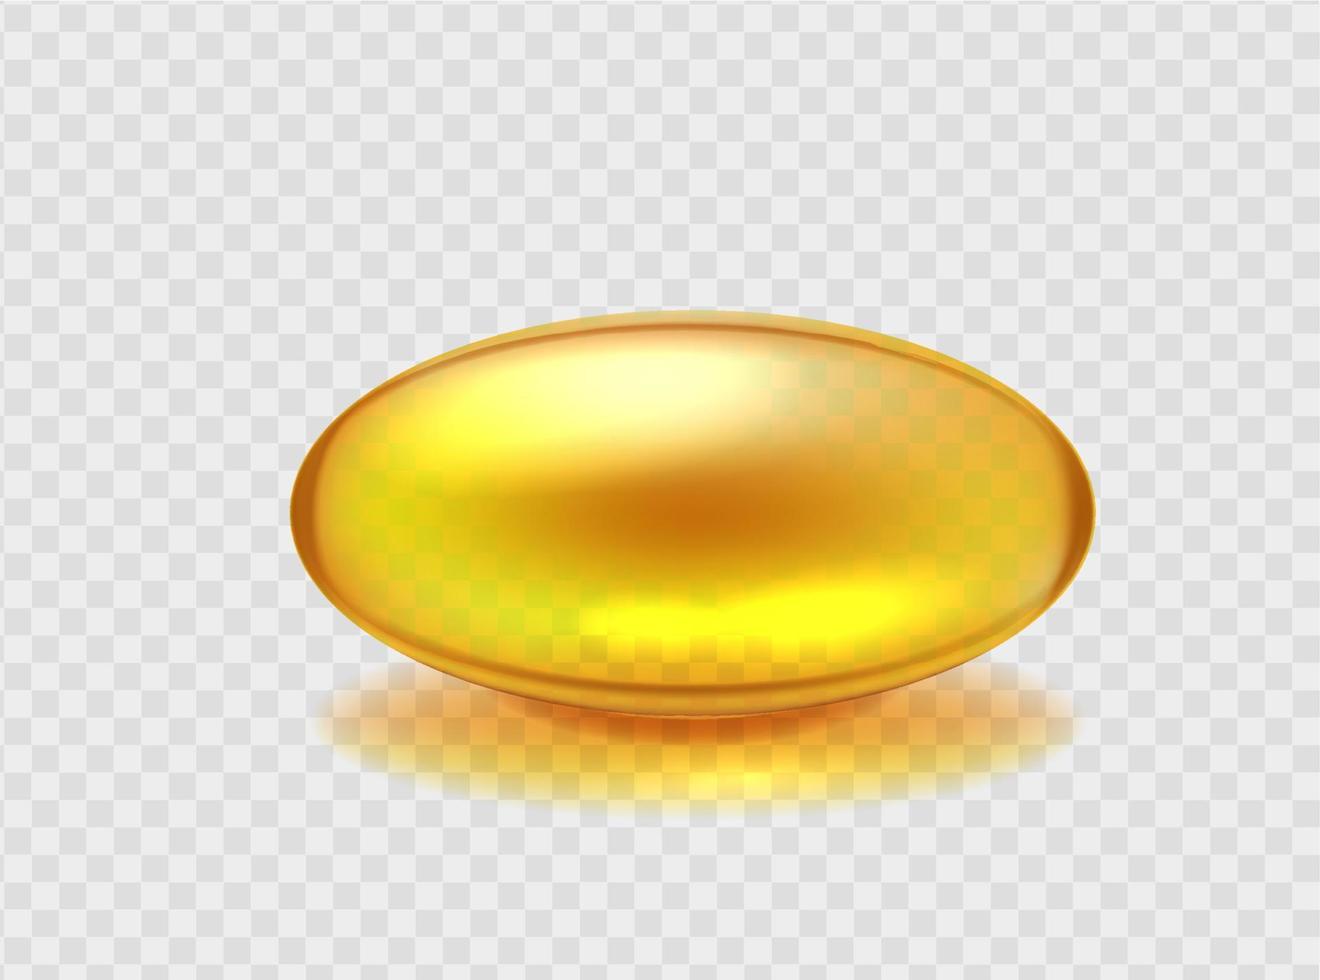 kapsel med gyllene omega syra olja. organisk hälsa för blod fartyg och lever kosmetisk för hud och hår hälsa gul transparent farmaceutisk ombud med vektor fet syra olja.